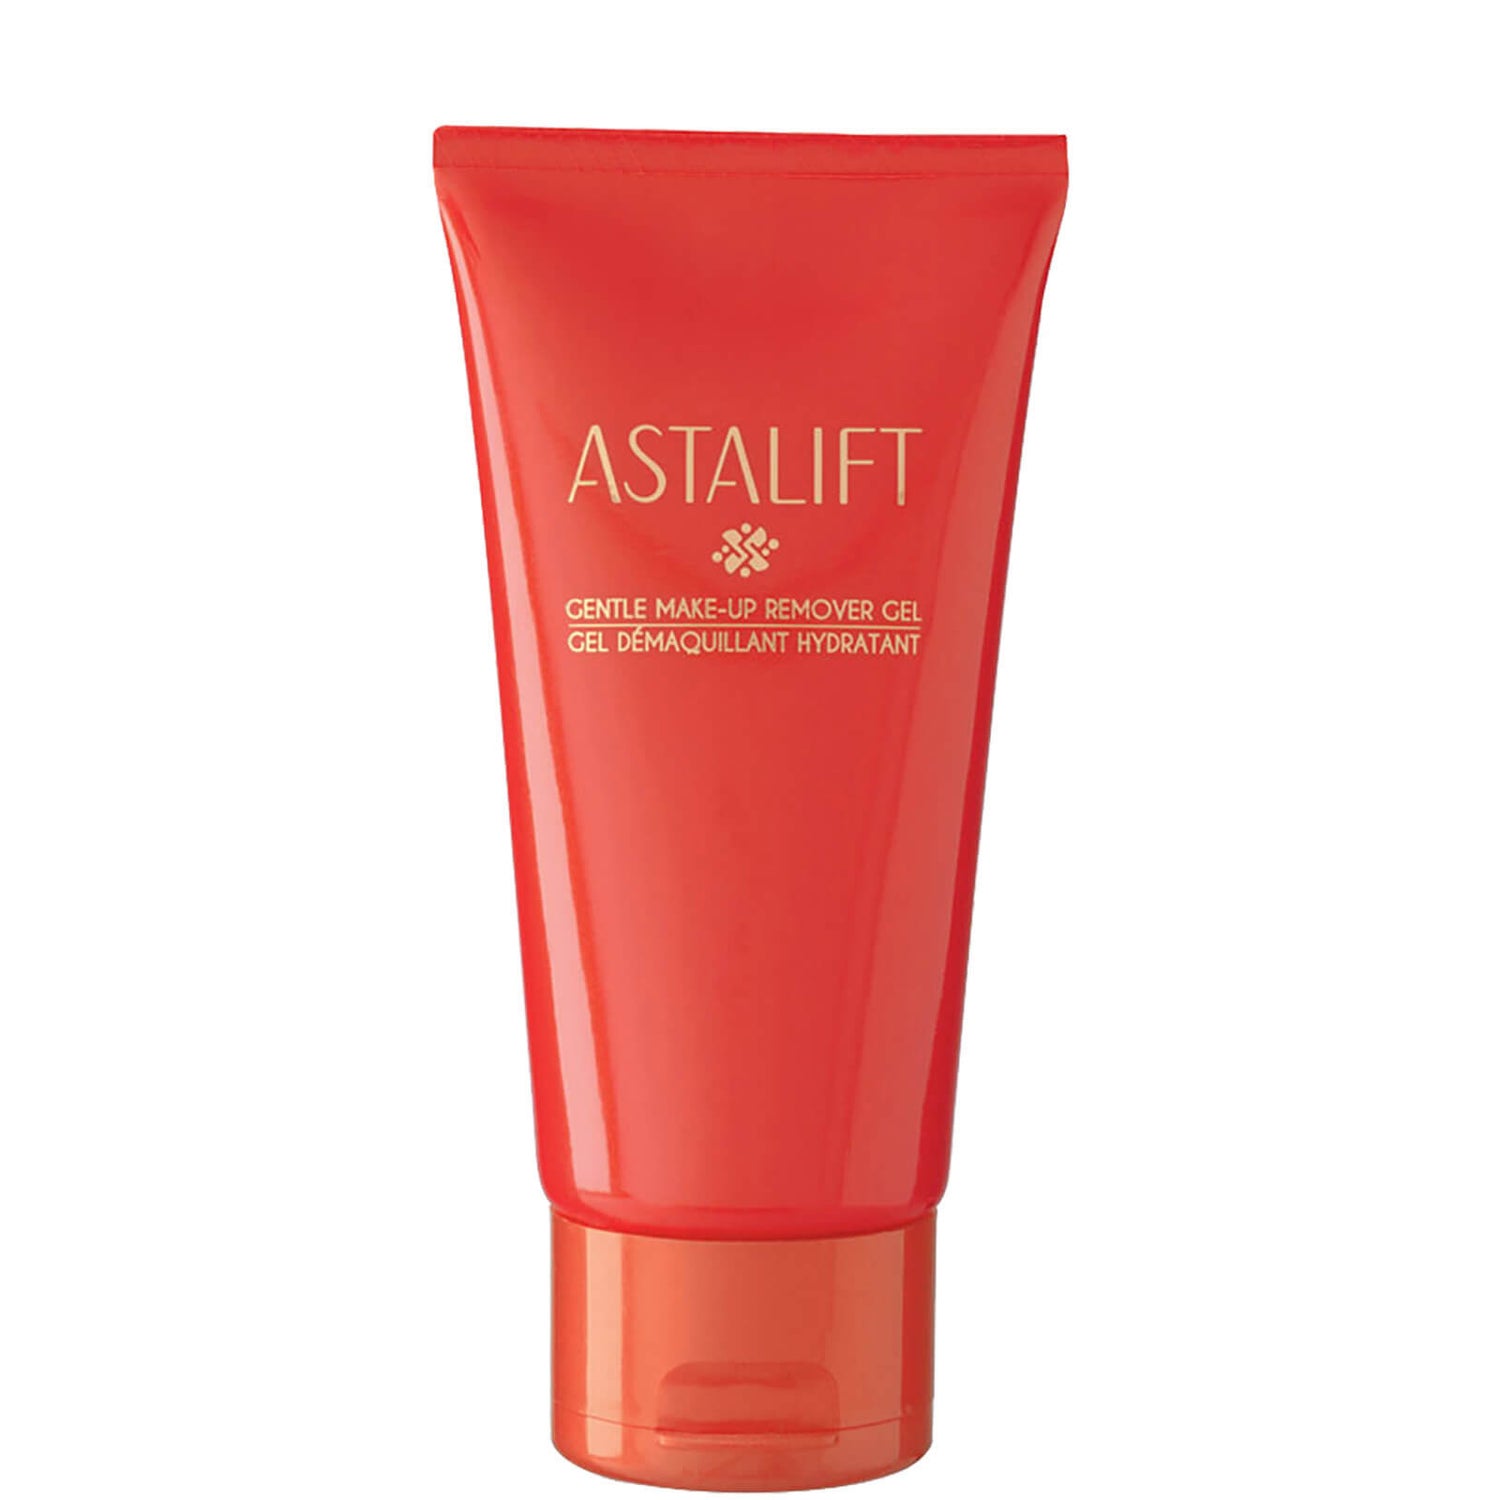 Astalift Gentle Make-Up Remover Gel - 120g